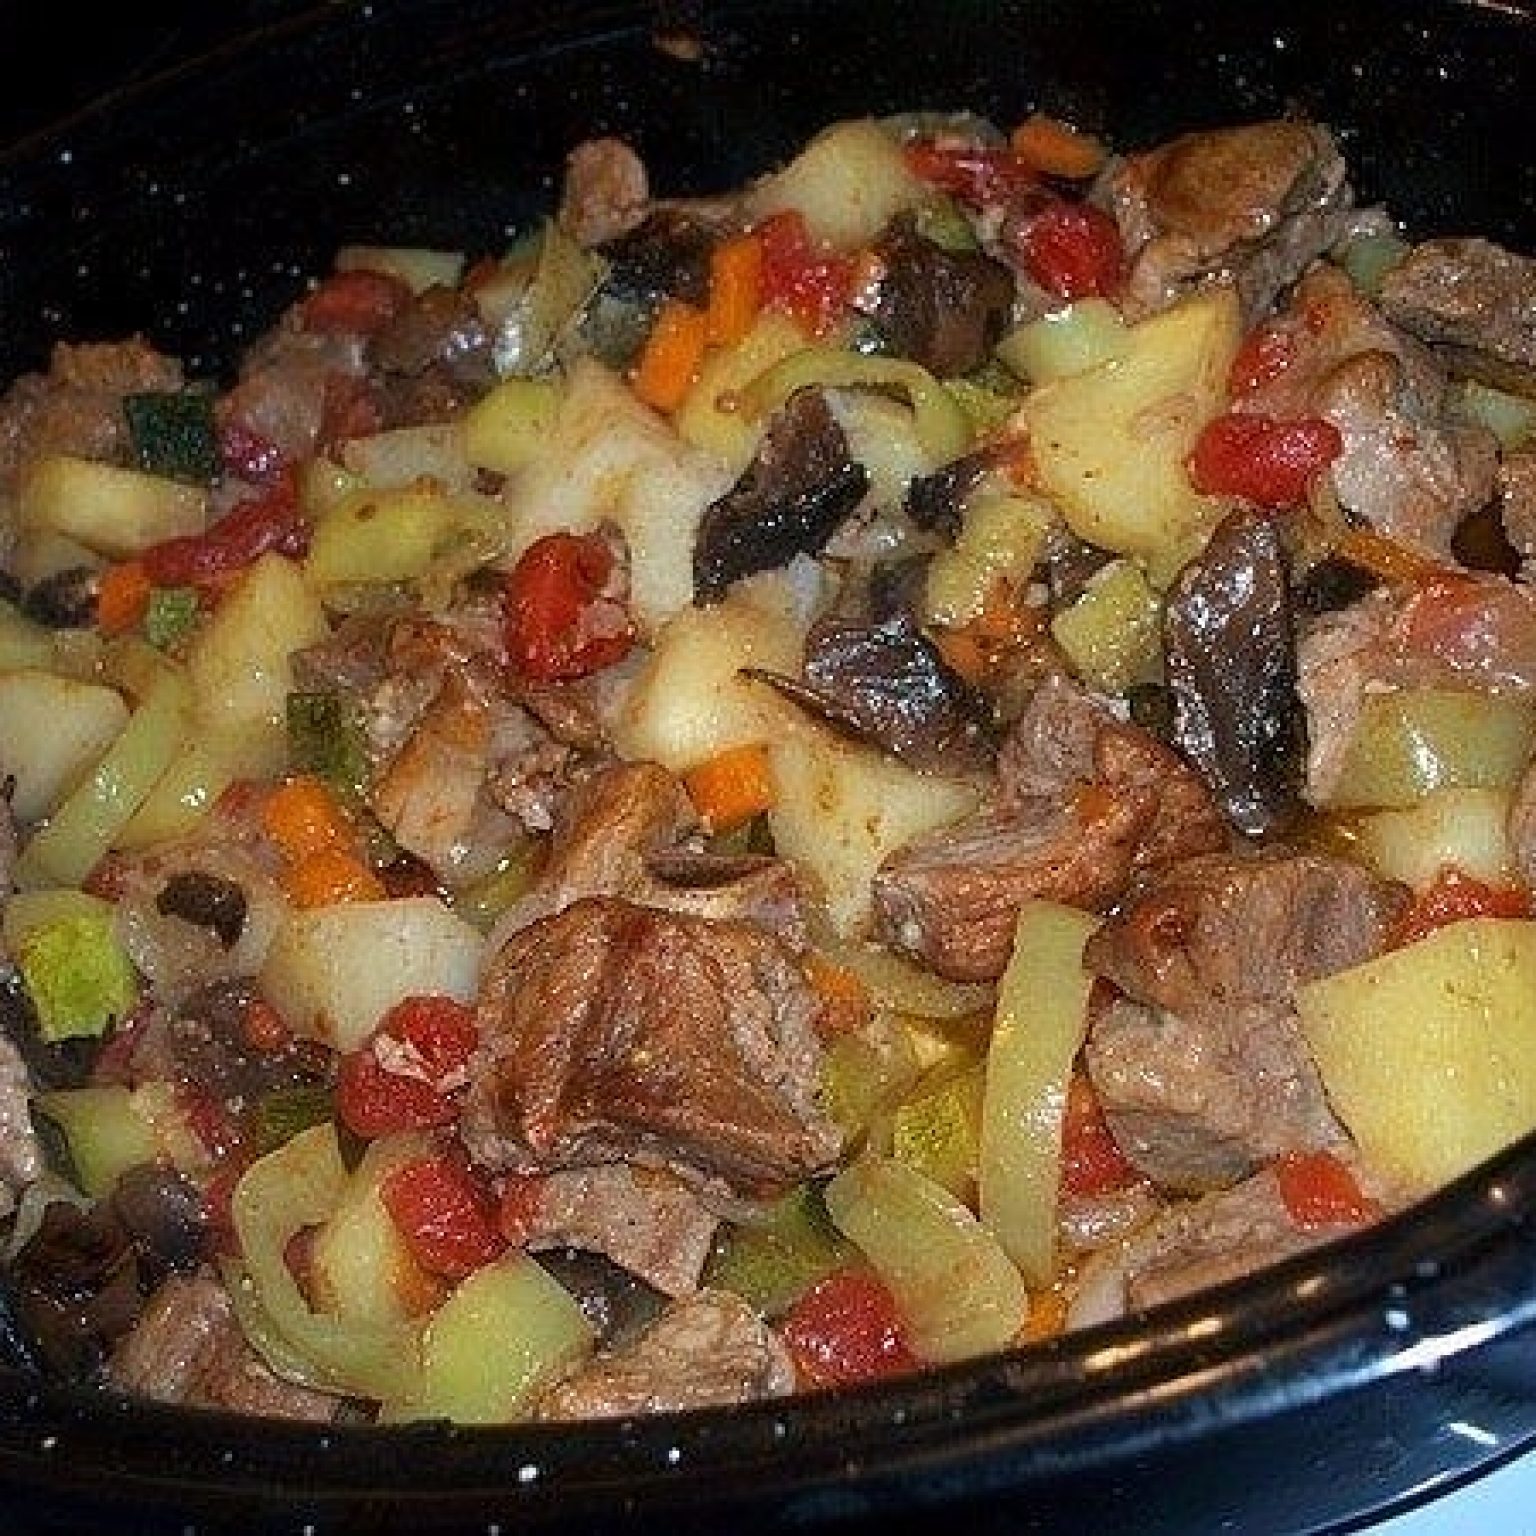 Картошка с мясом и овощами в духовке